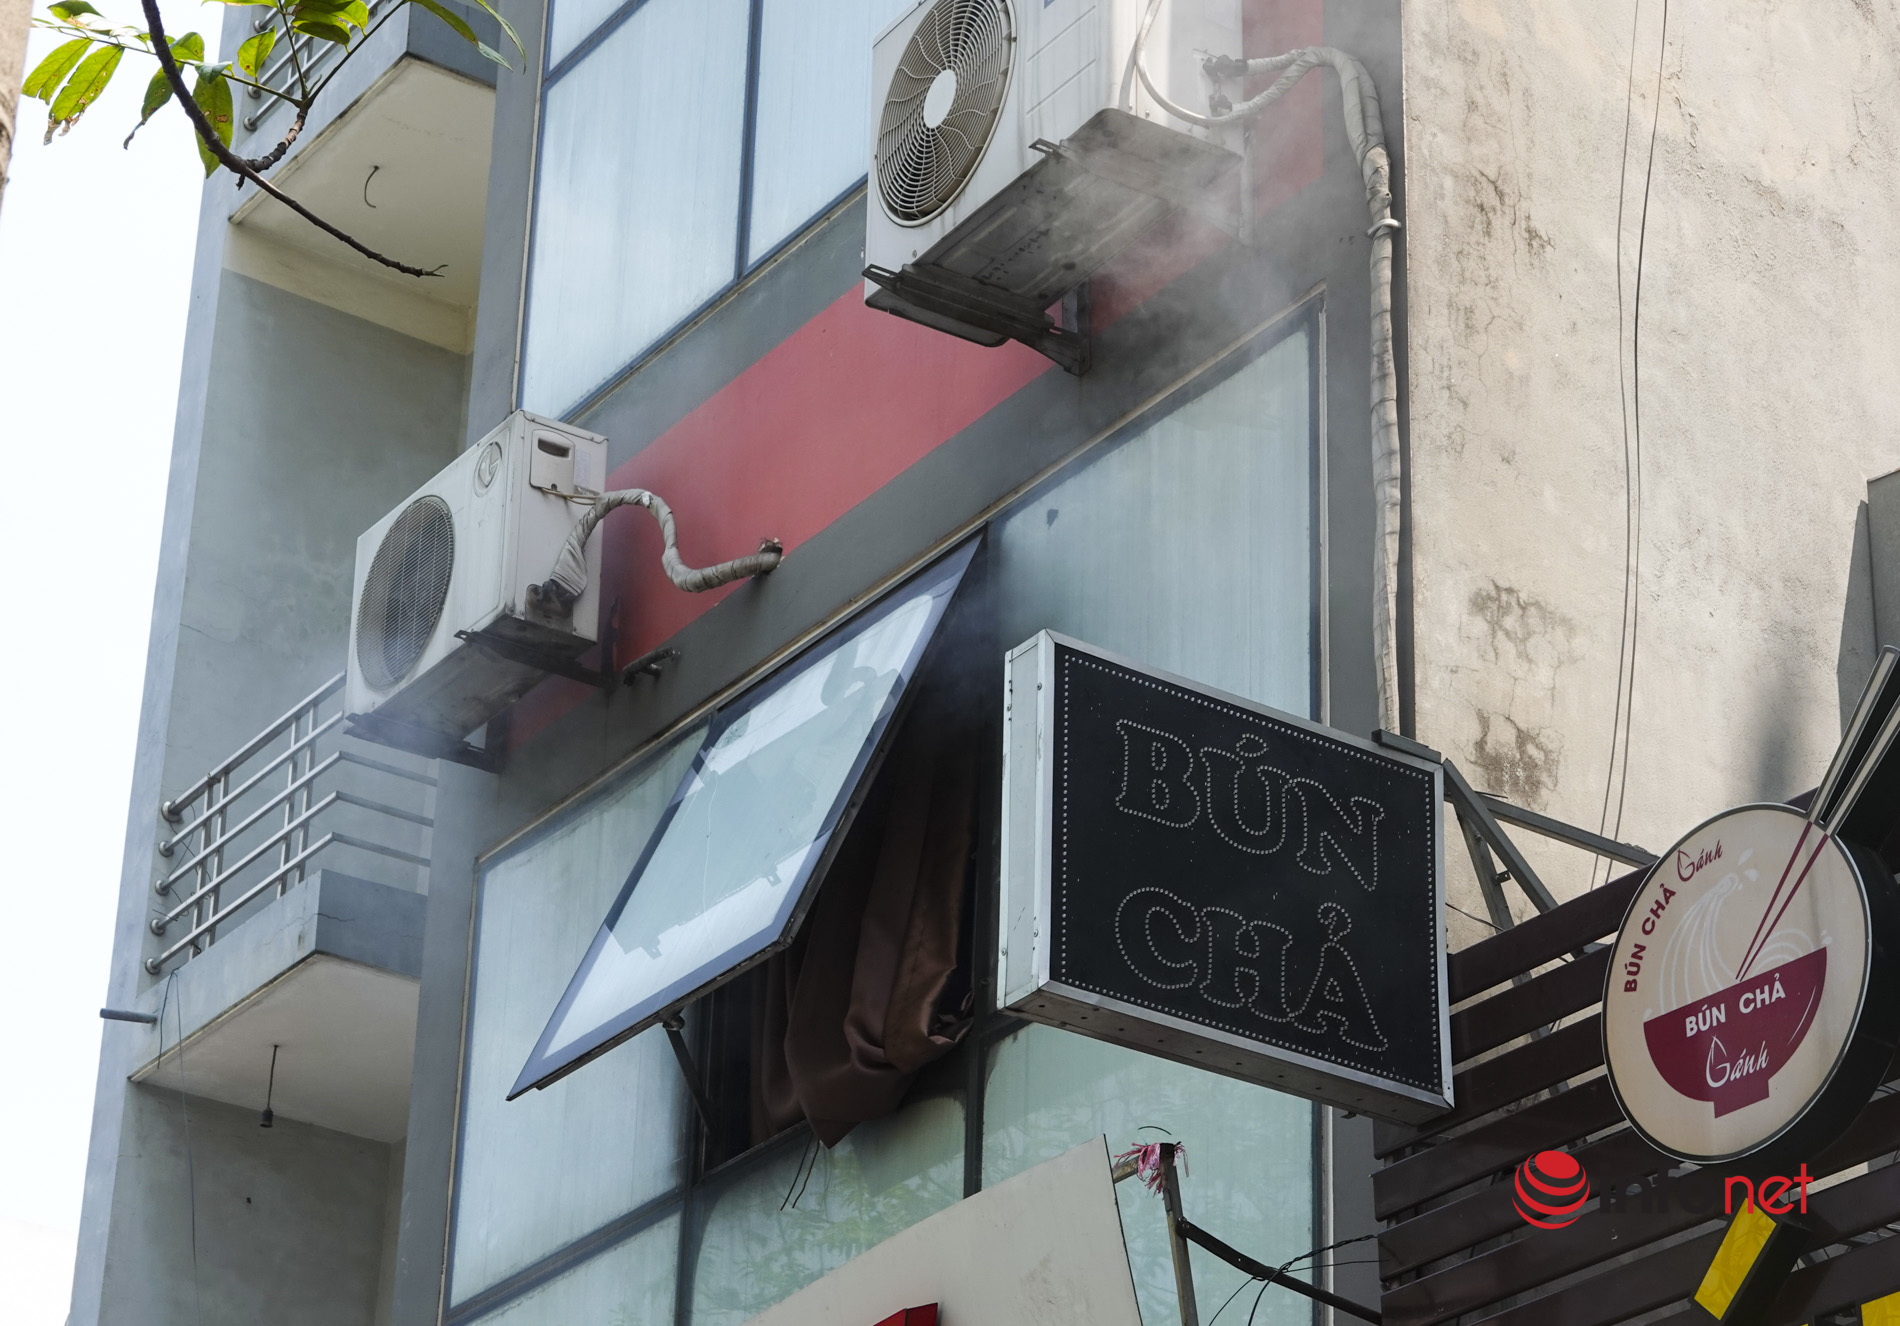 Hà Nội: Cháy quán bún chả lan sang cửa hàng massage, khách hàng bỏ chạy tán loạn